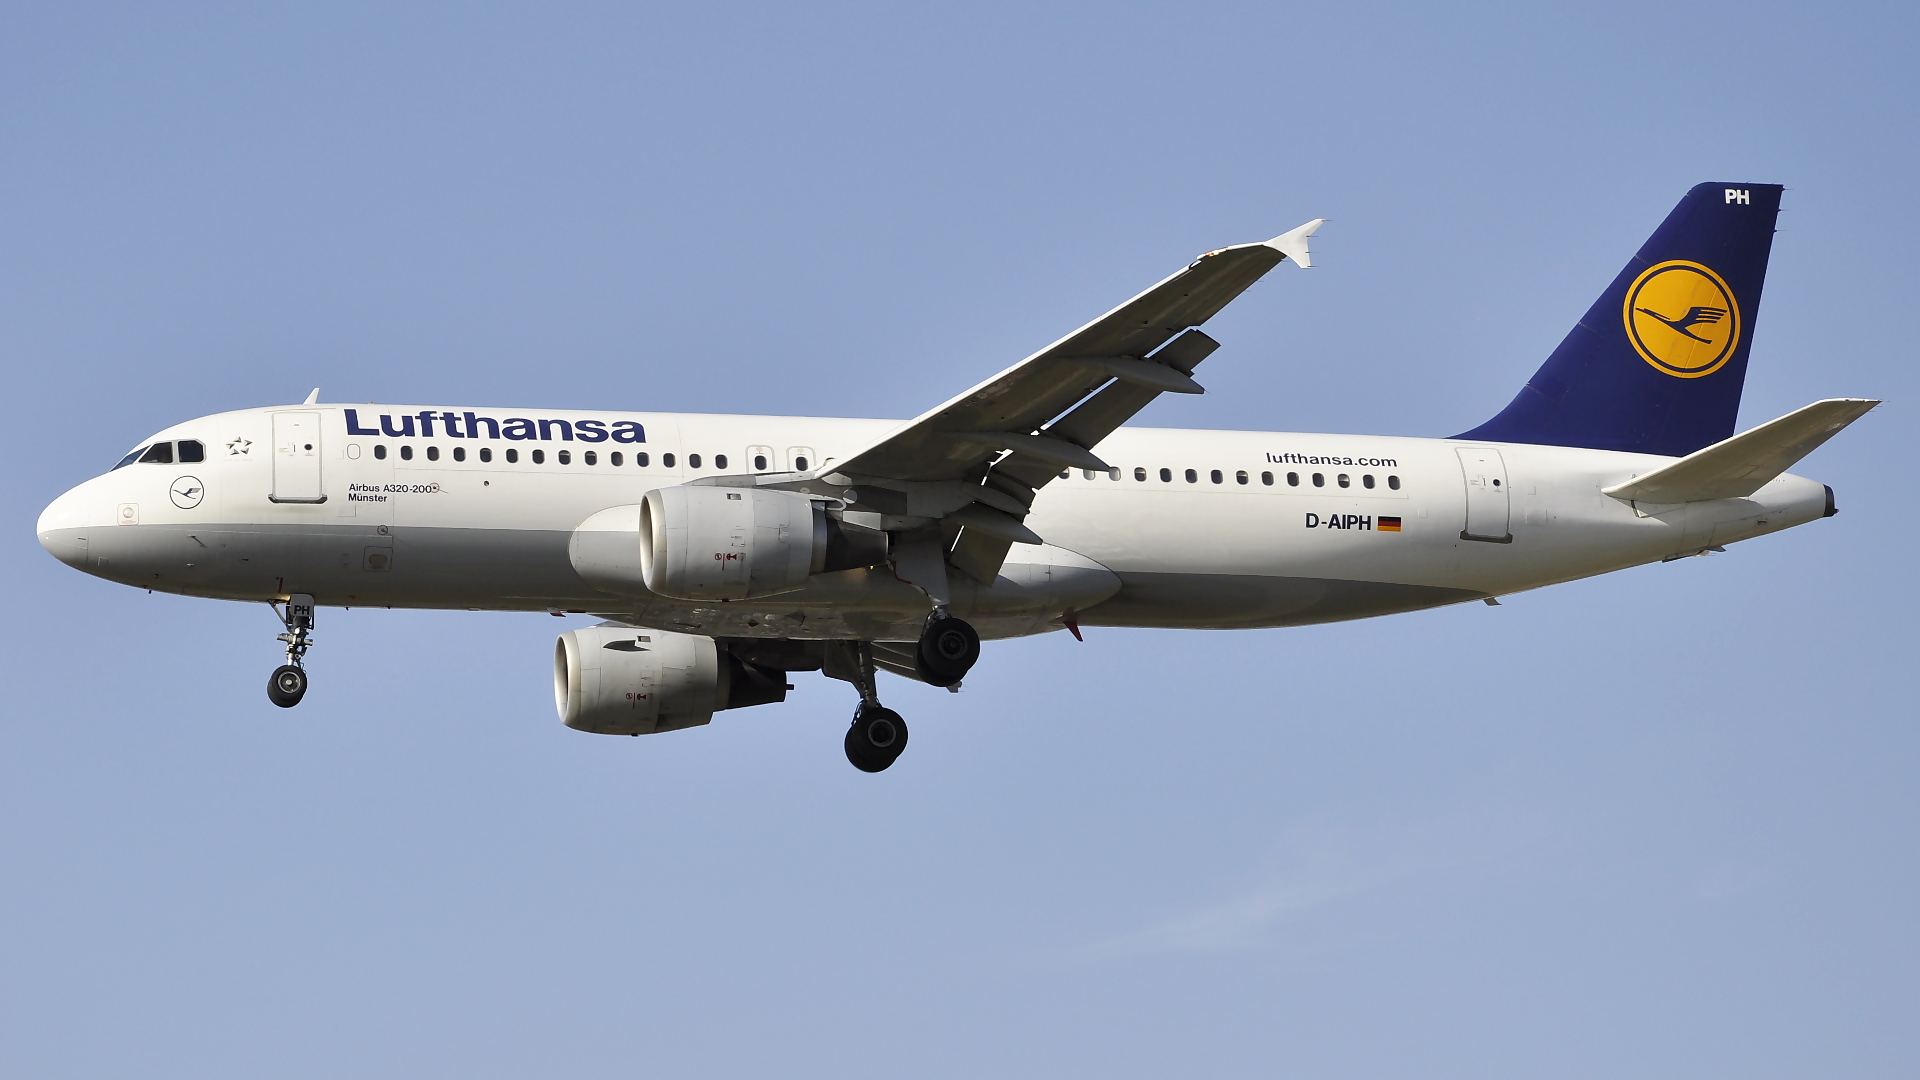 D-AIPH ✈ Lufthansa Airbus 320-211 @ London-Heathrow